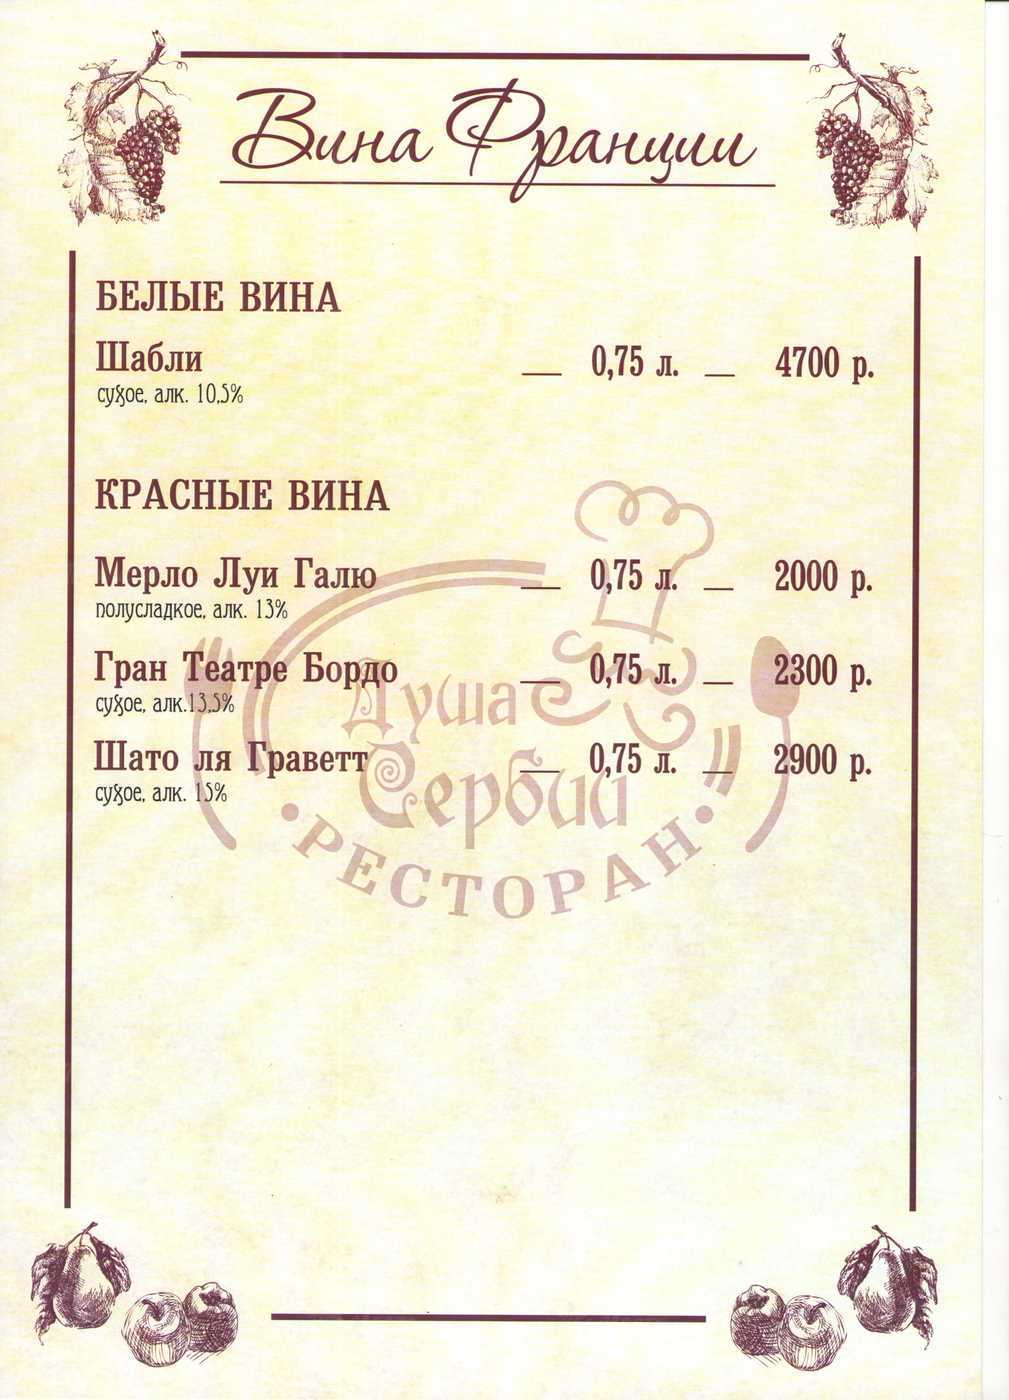 Меню и цены ресторана Душа Сербии в уле. Отто Шмидта фото 18